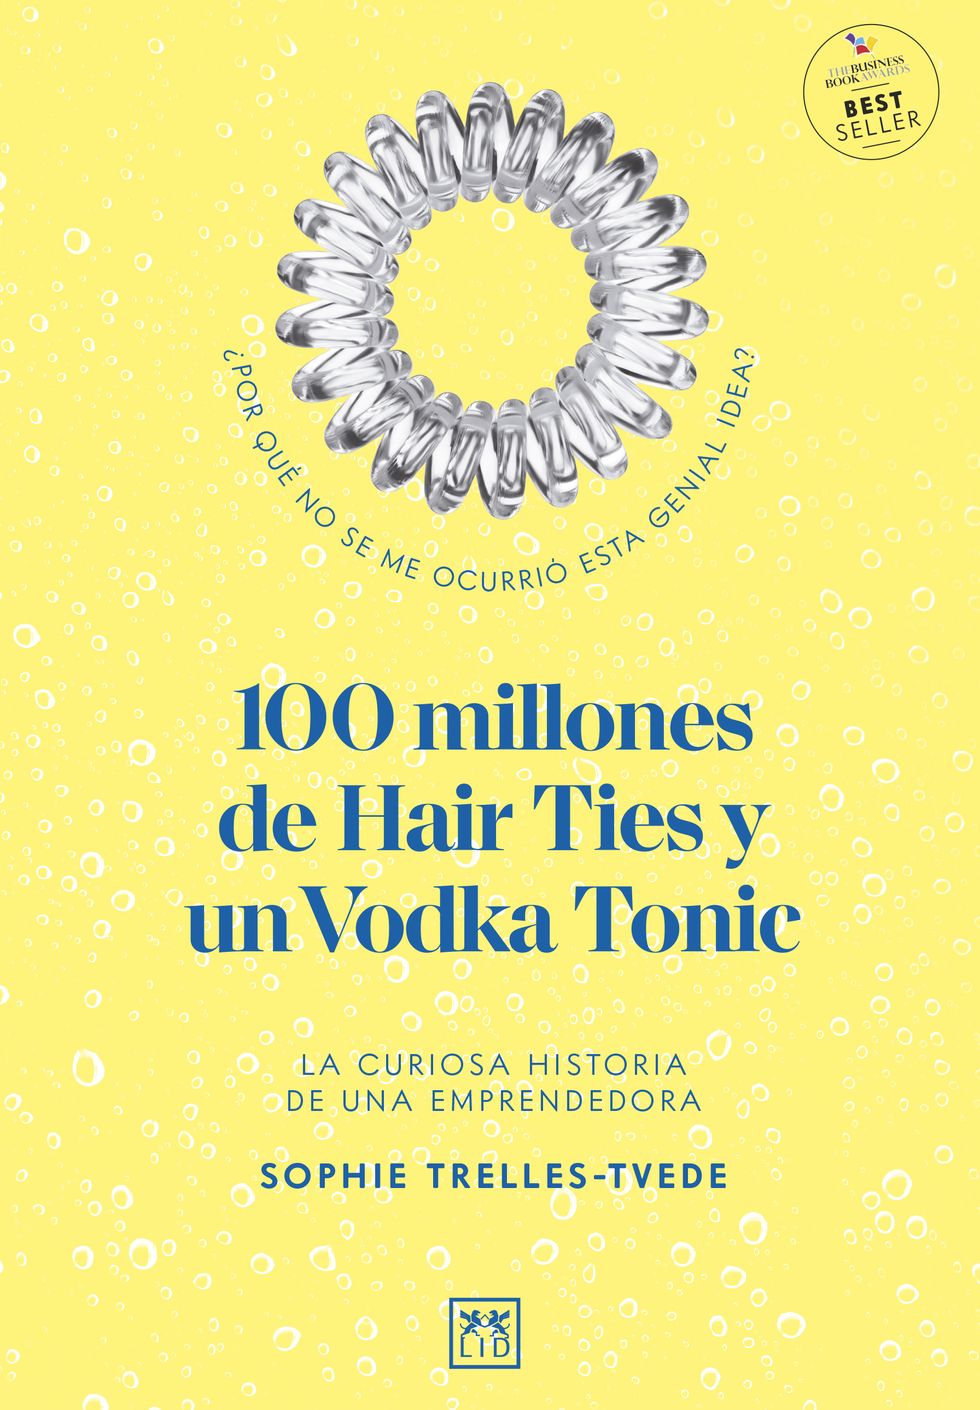 ﻿portada de ﻿ ‘100 millones de hair ties y un vodka tonic’ de ﻿sophie trellestvede